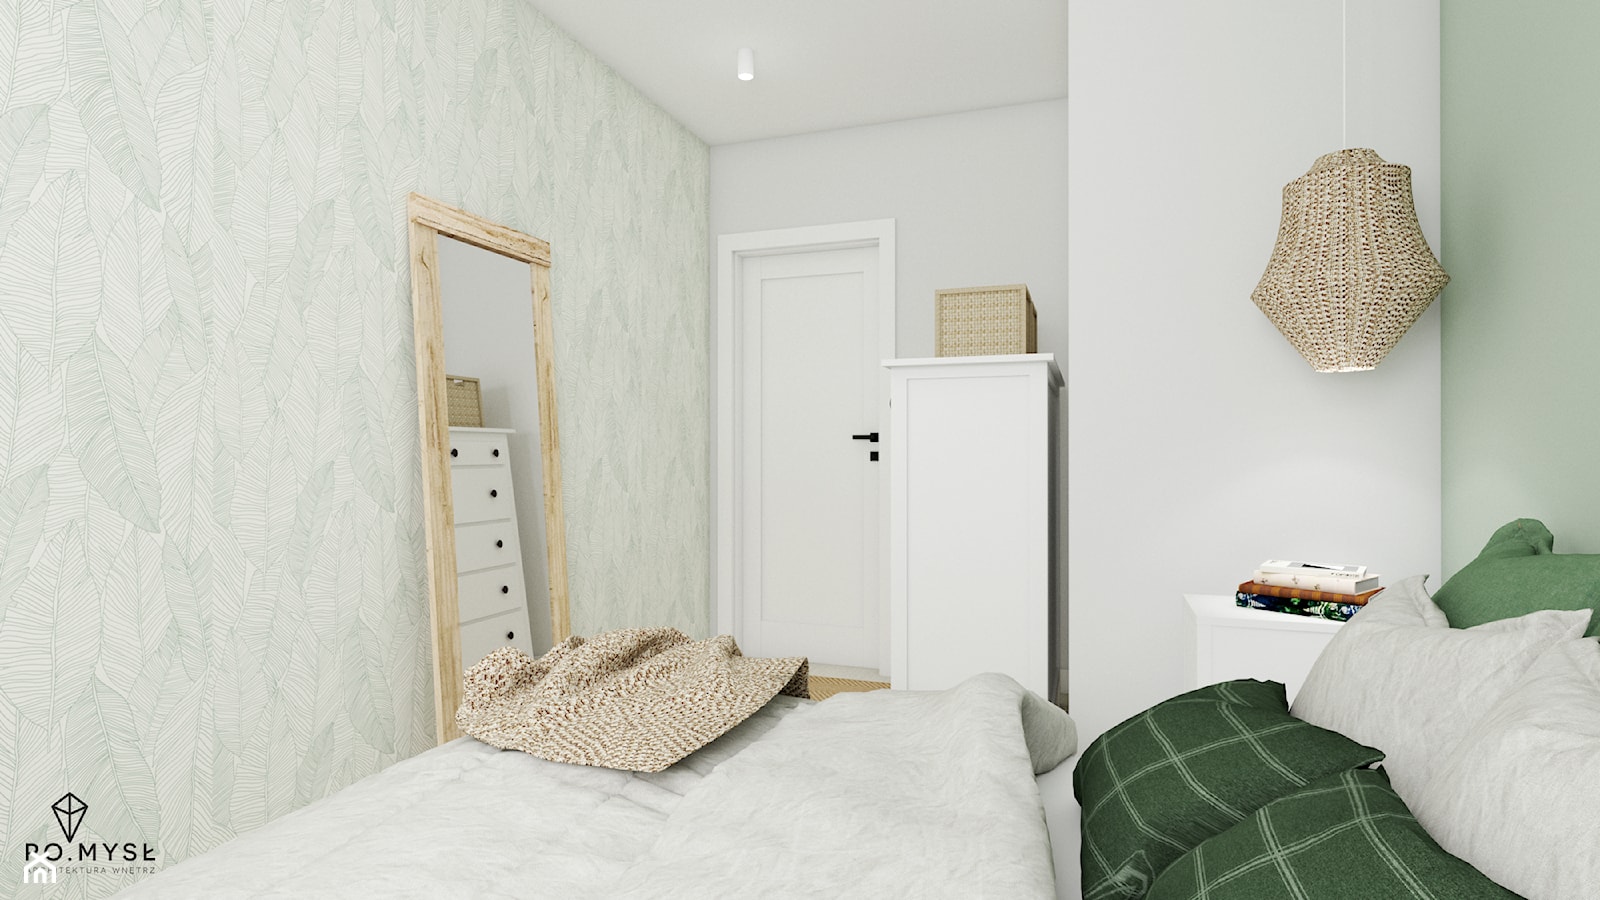 NATURALNE WNĘTRZE • juta, drewno i wiklina - Średnia biała zielona sypialnia, styl skandynawski - zdjęcie od PO.MYSŁ - Homebook